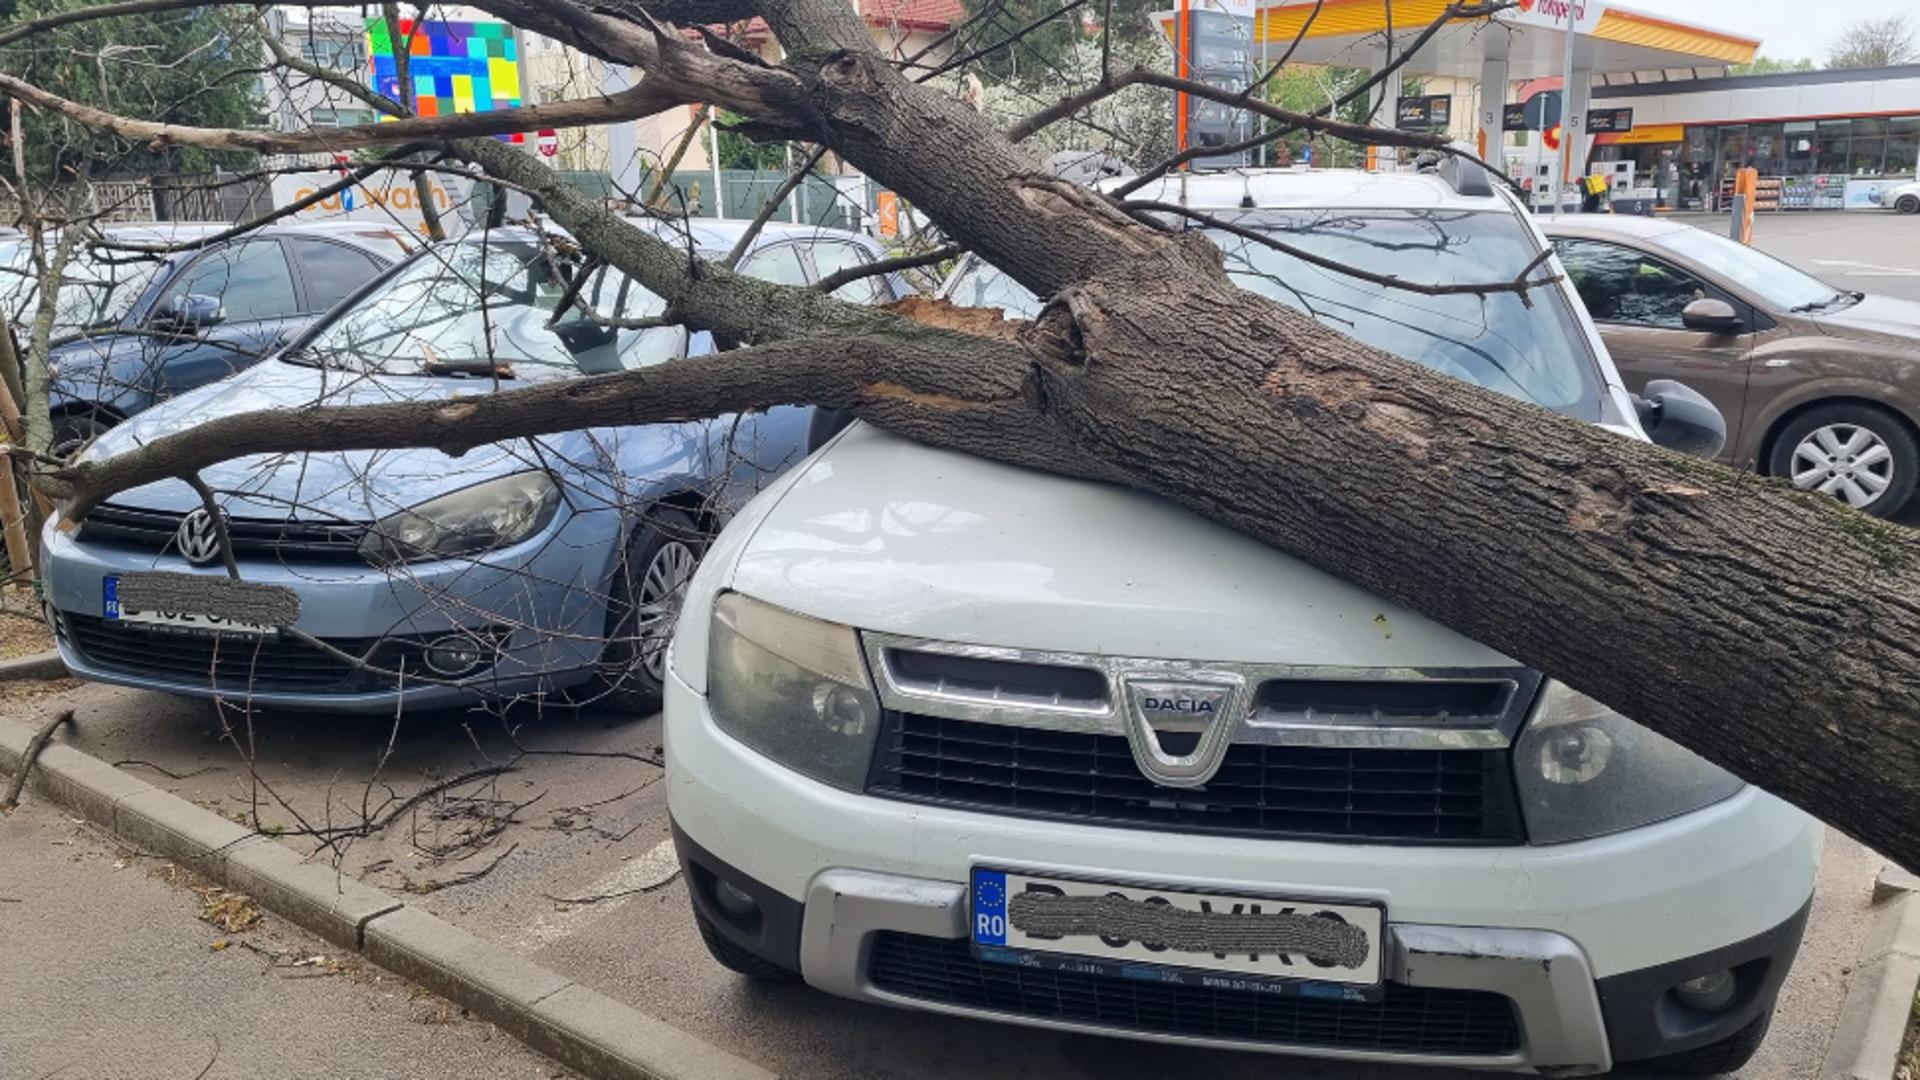 Autoturism avariat în zona  Valea Oltului(sursă: Info Trafic Bucuresti si Ilfov)